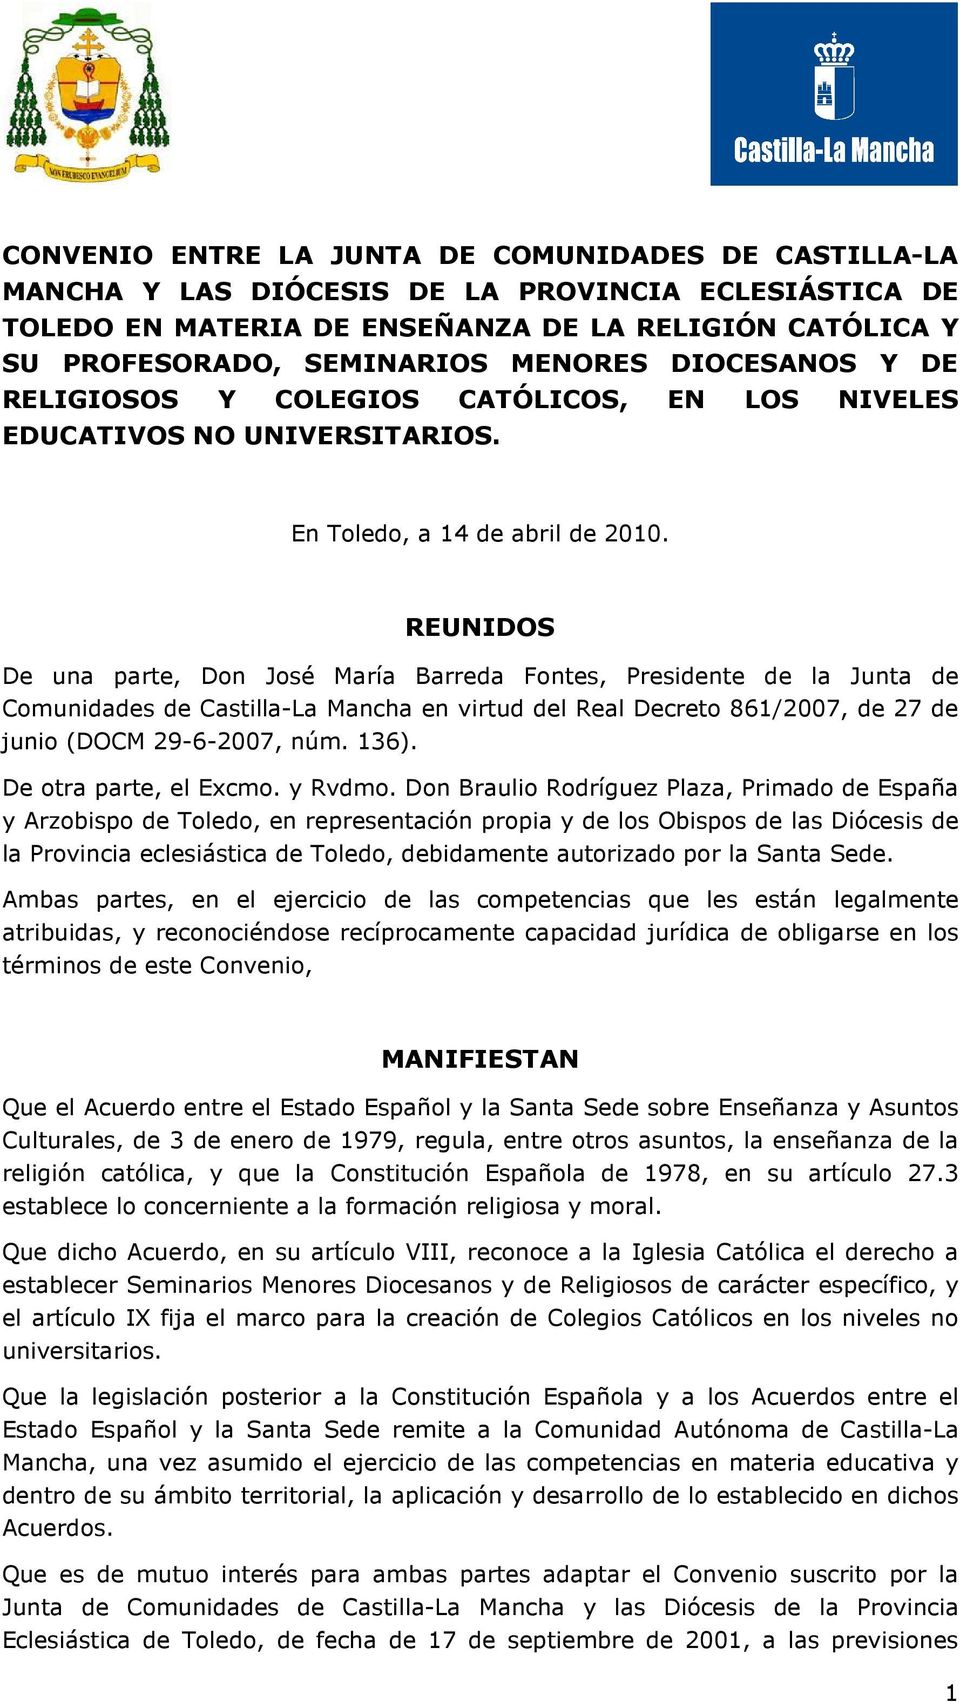 REUNIDOS De una parte, Don José María Barreda Fontes, Presidente de la Junta de Comunidades de Castilla-La Mancha en virtud del Real Decreto 861/2007, de 27 de junio (DOCM 29-6-2007, núm. 136).